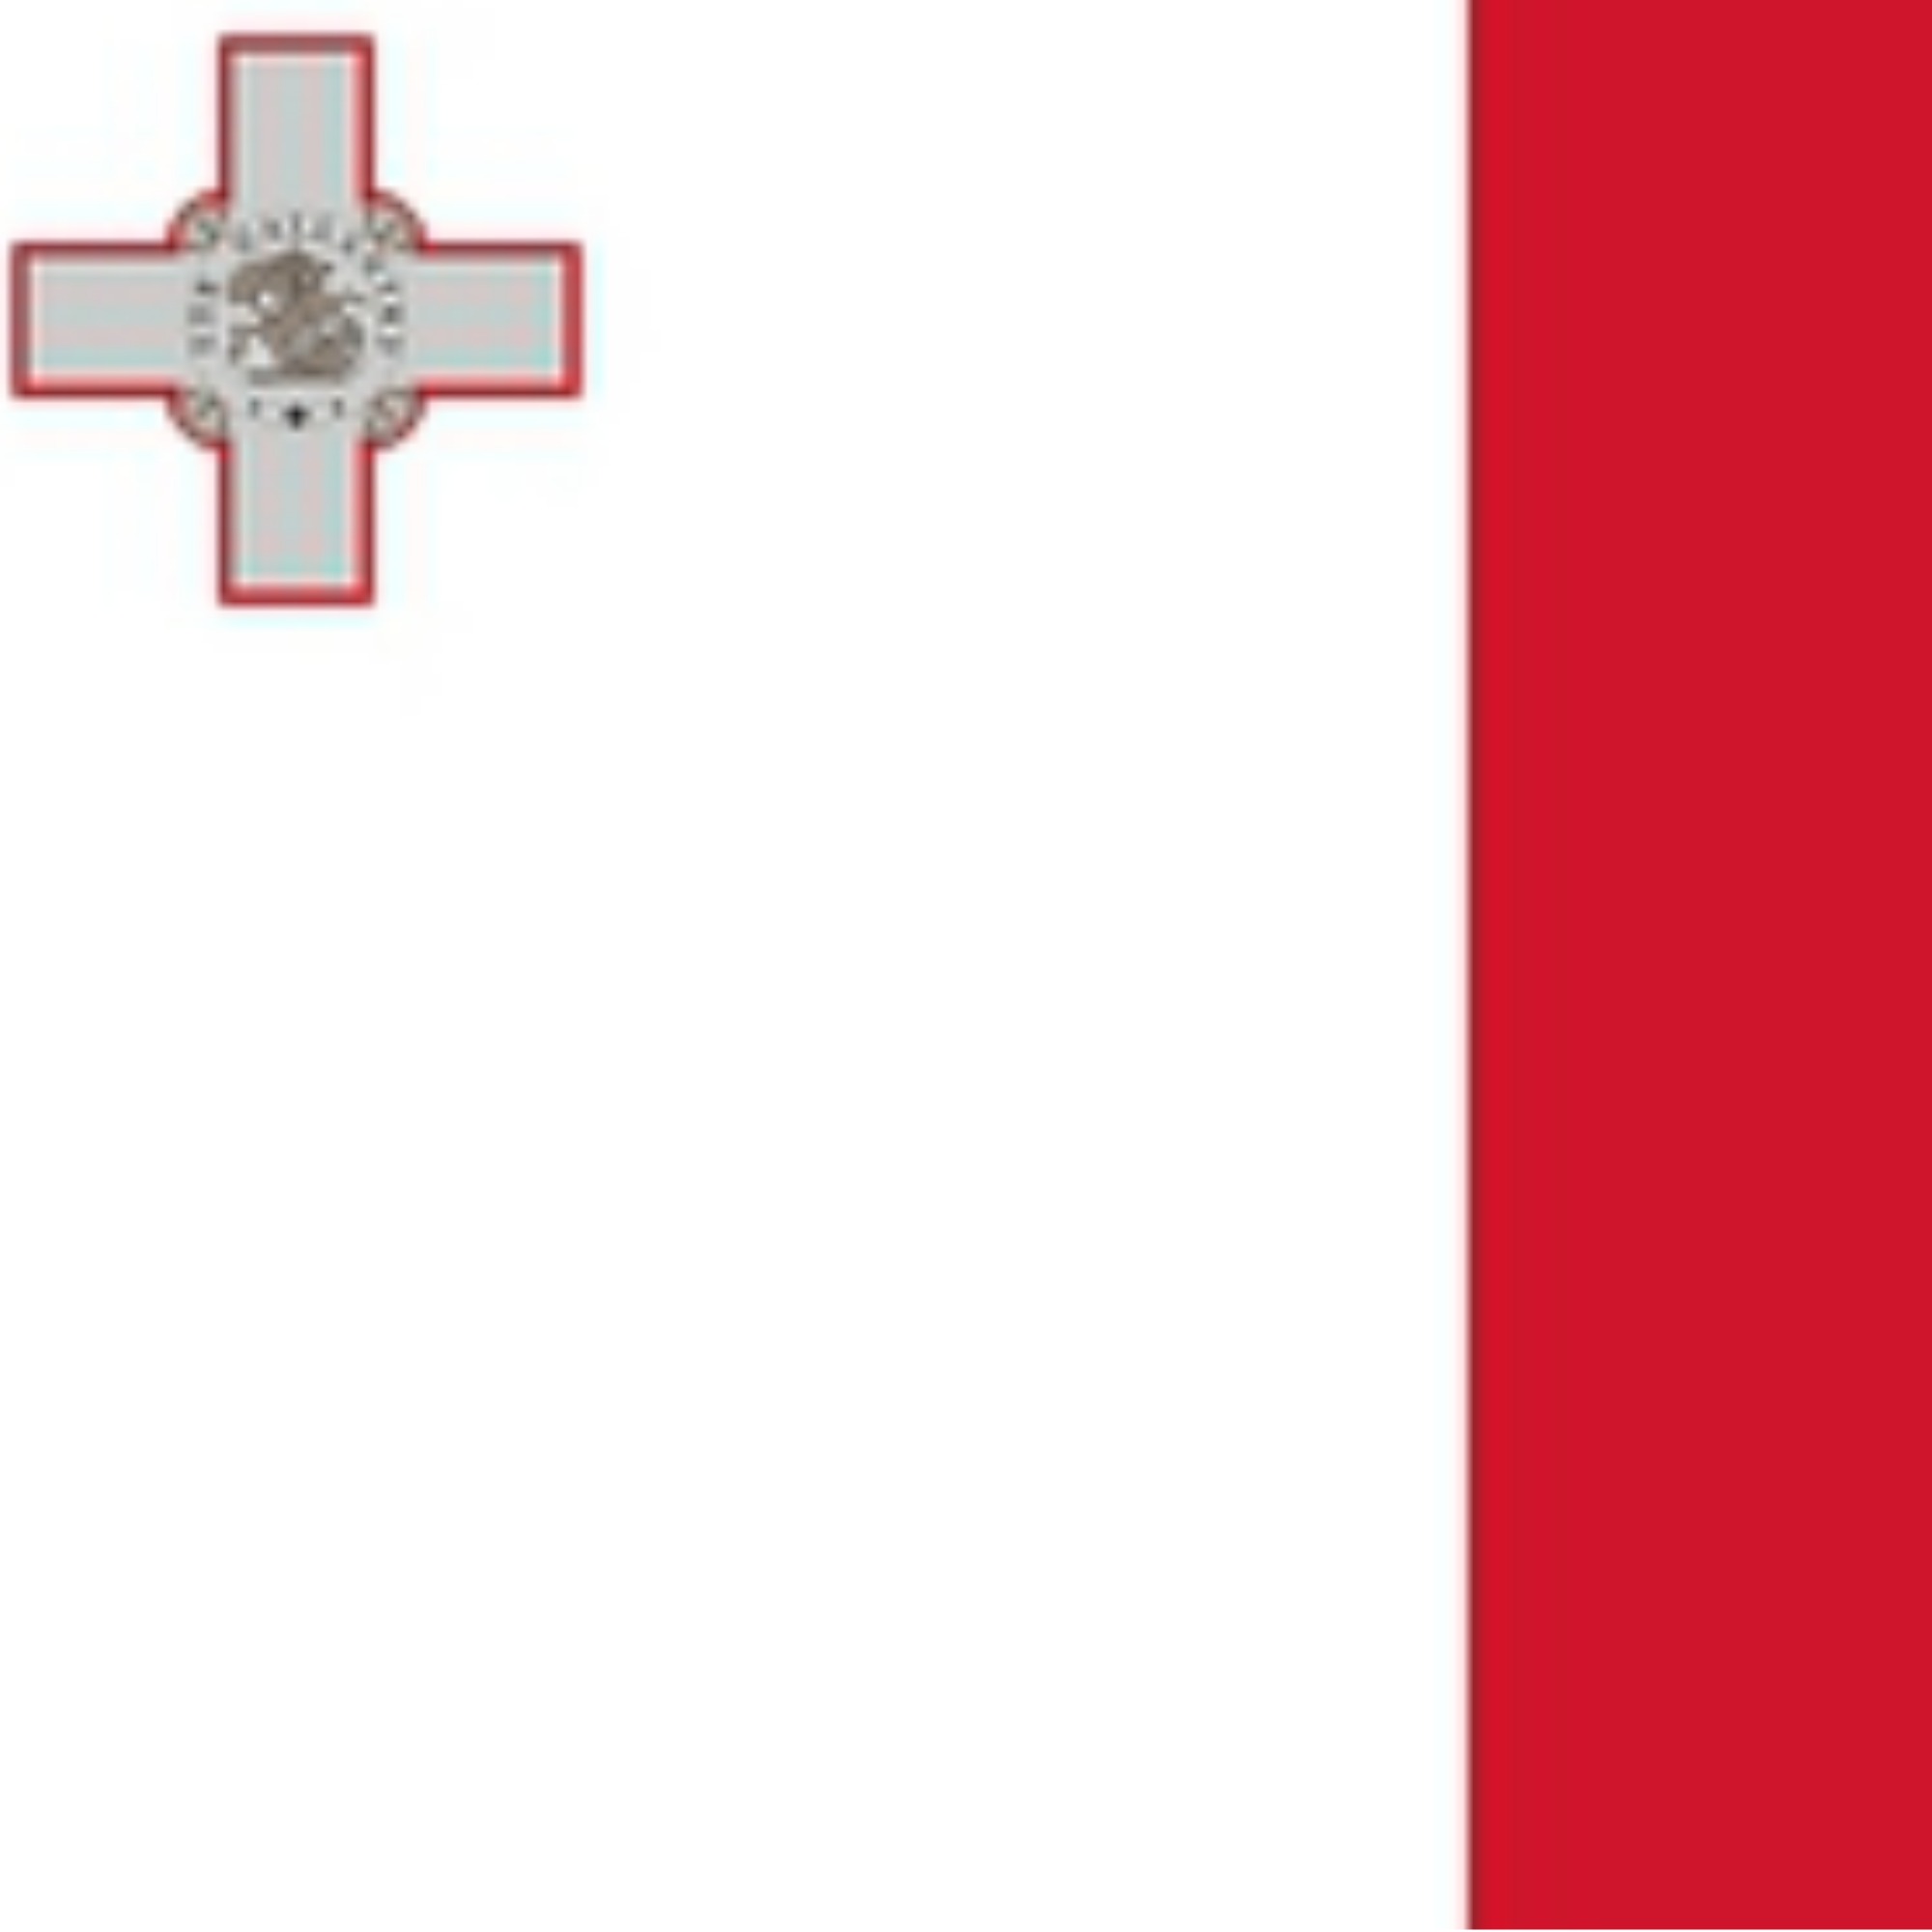 Honorary Consulate of Malta (Valencia)